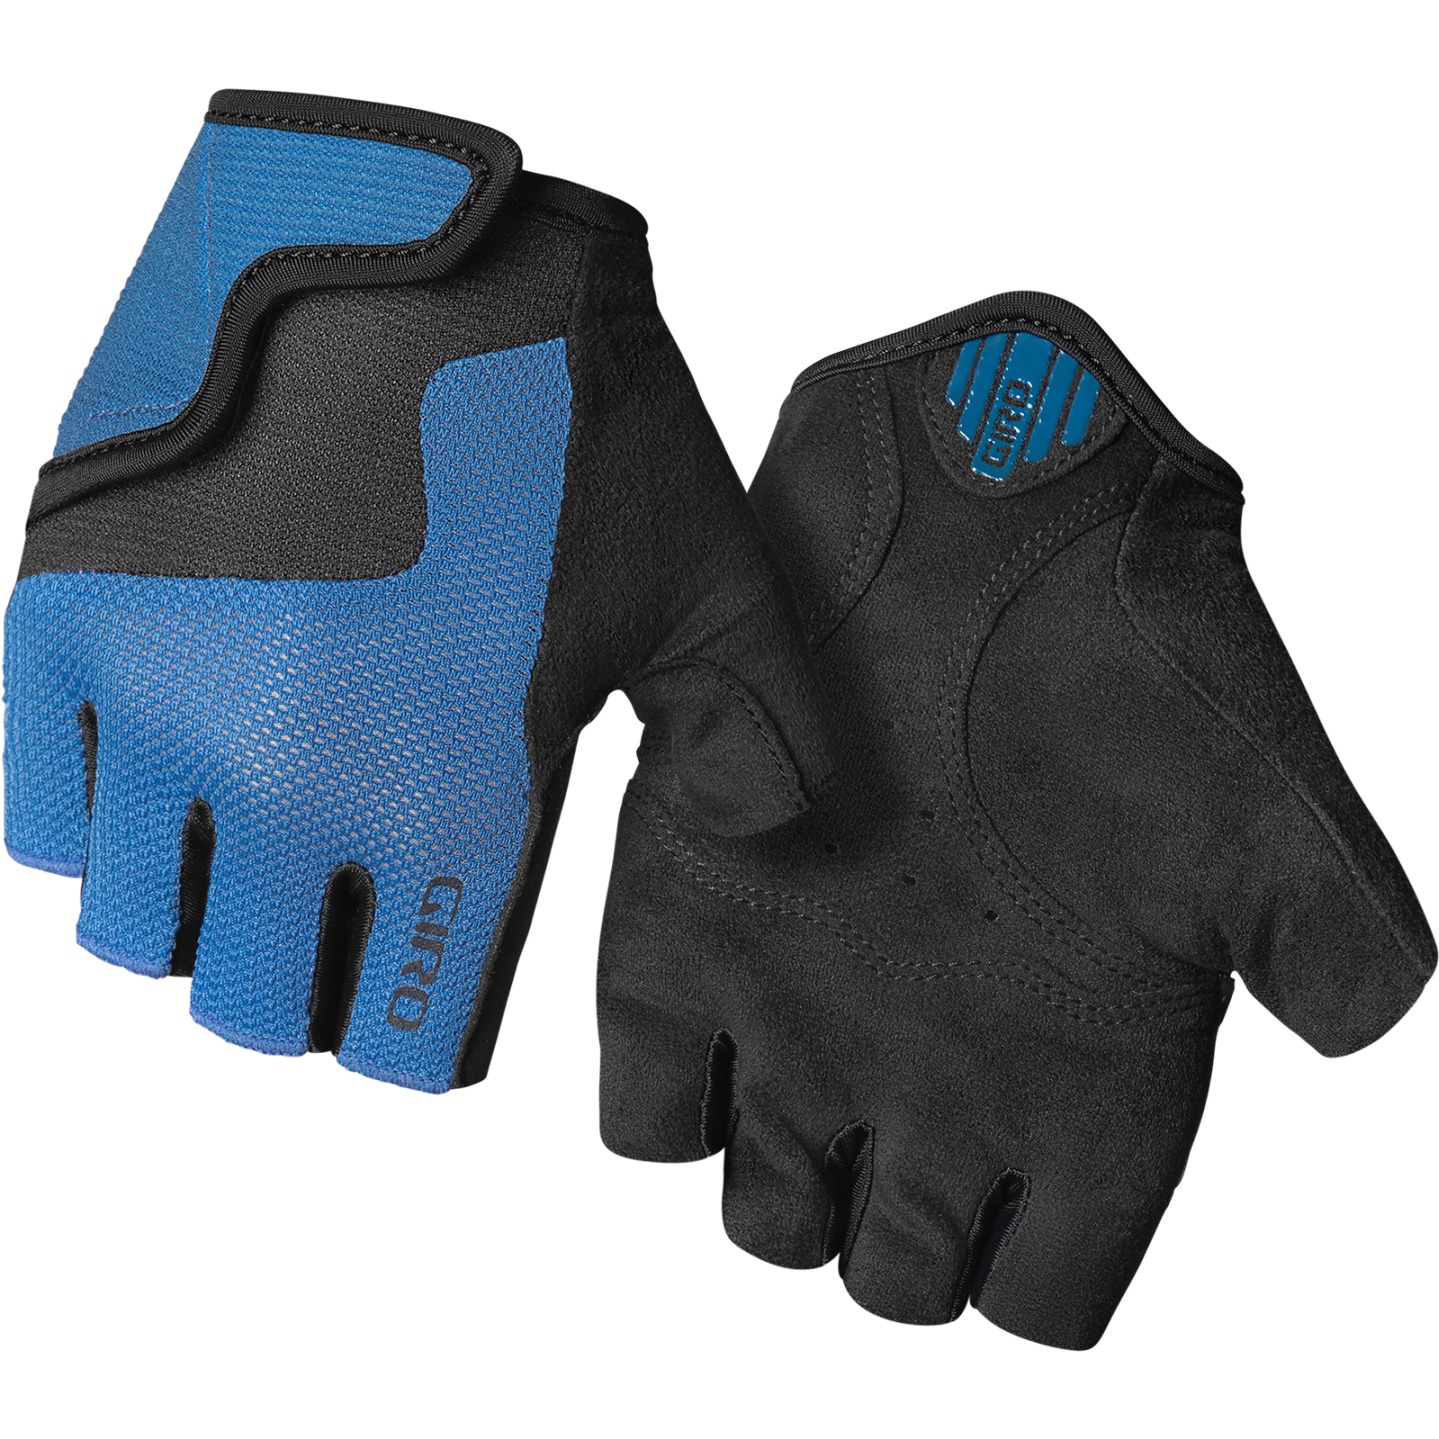 Produktbild von Giro Bravo Junior Handschuhe Kinder - shaboti blue